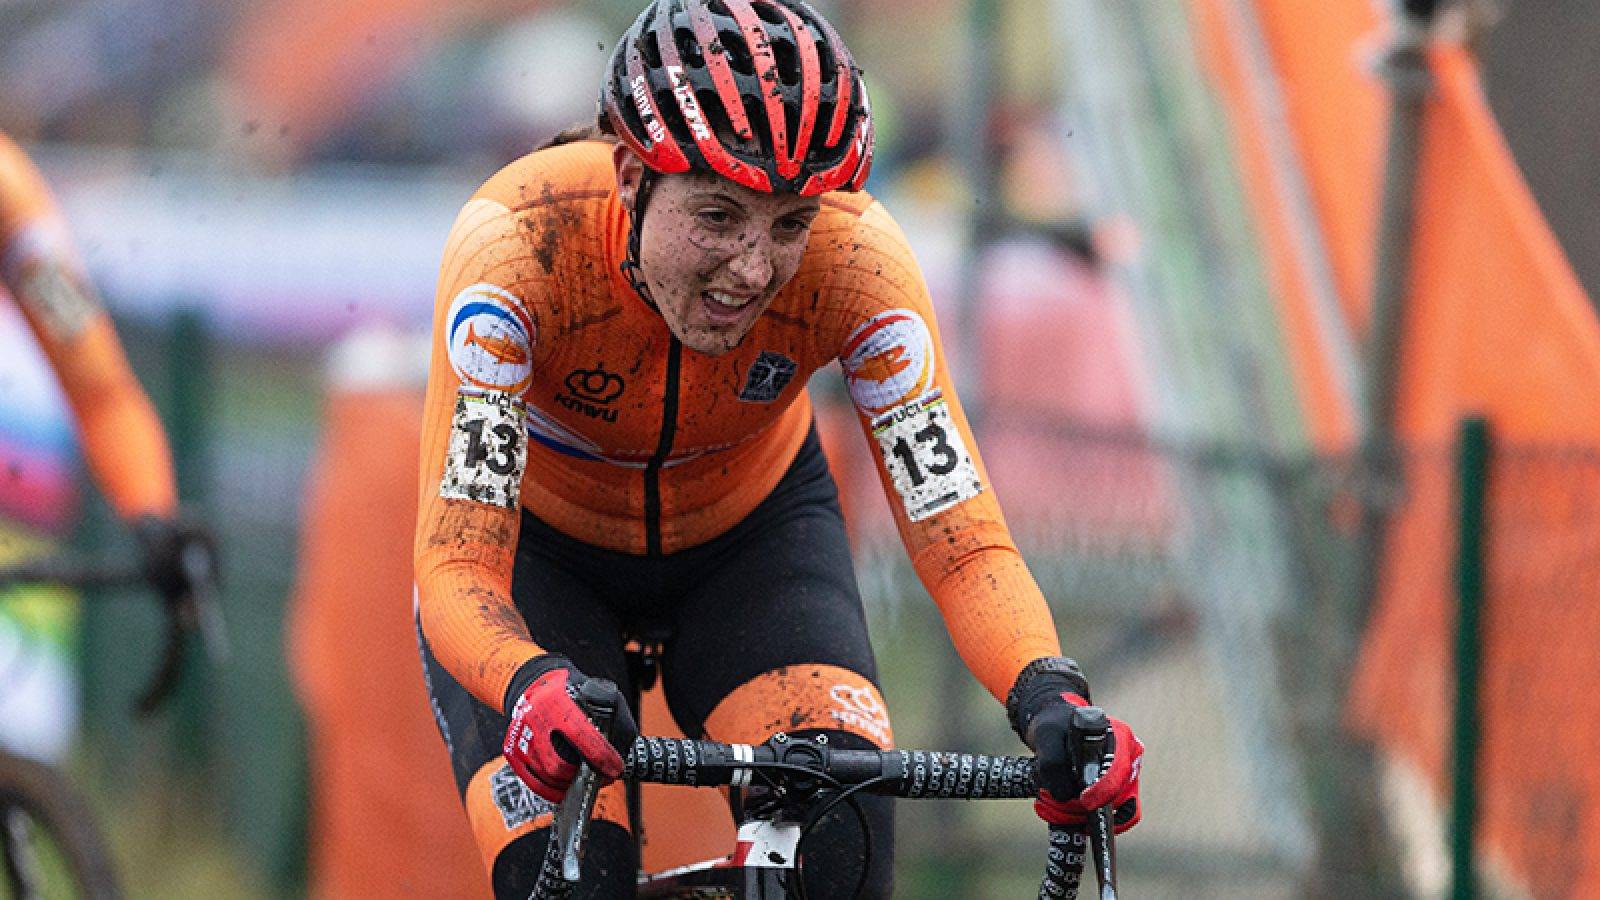 2019 UCI Cyclo-cross World Championships, Denmark,race elite women